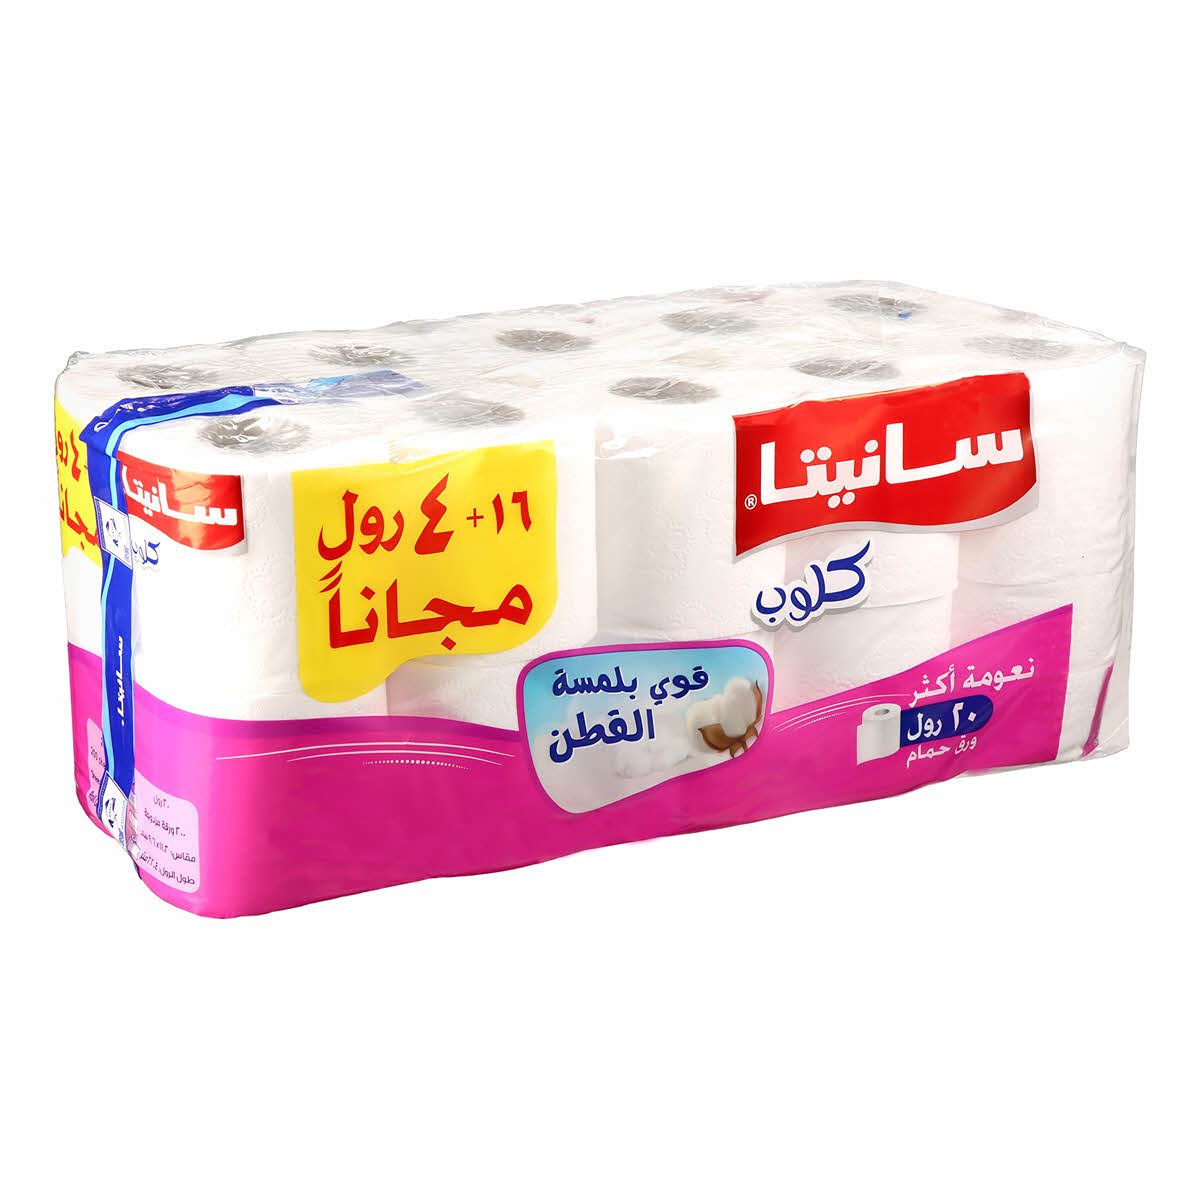 Özgür bey, Araplar kutsal kuran dili ile tuvalet kağıdı ambalajına yazı yazmışlar saygısızlar. İncindiniz mi @eczozgurozel